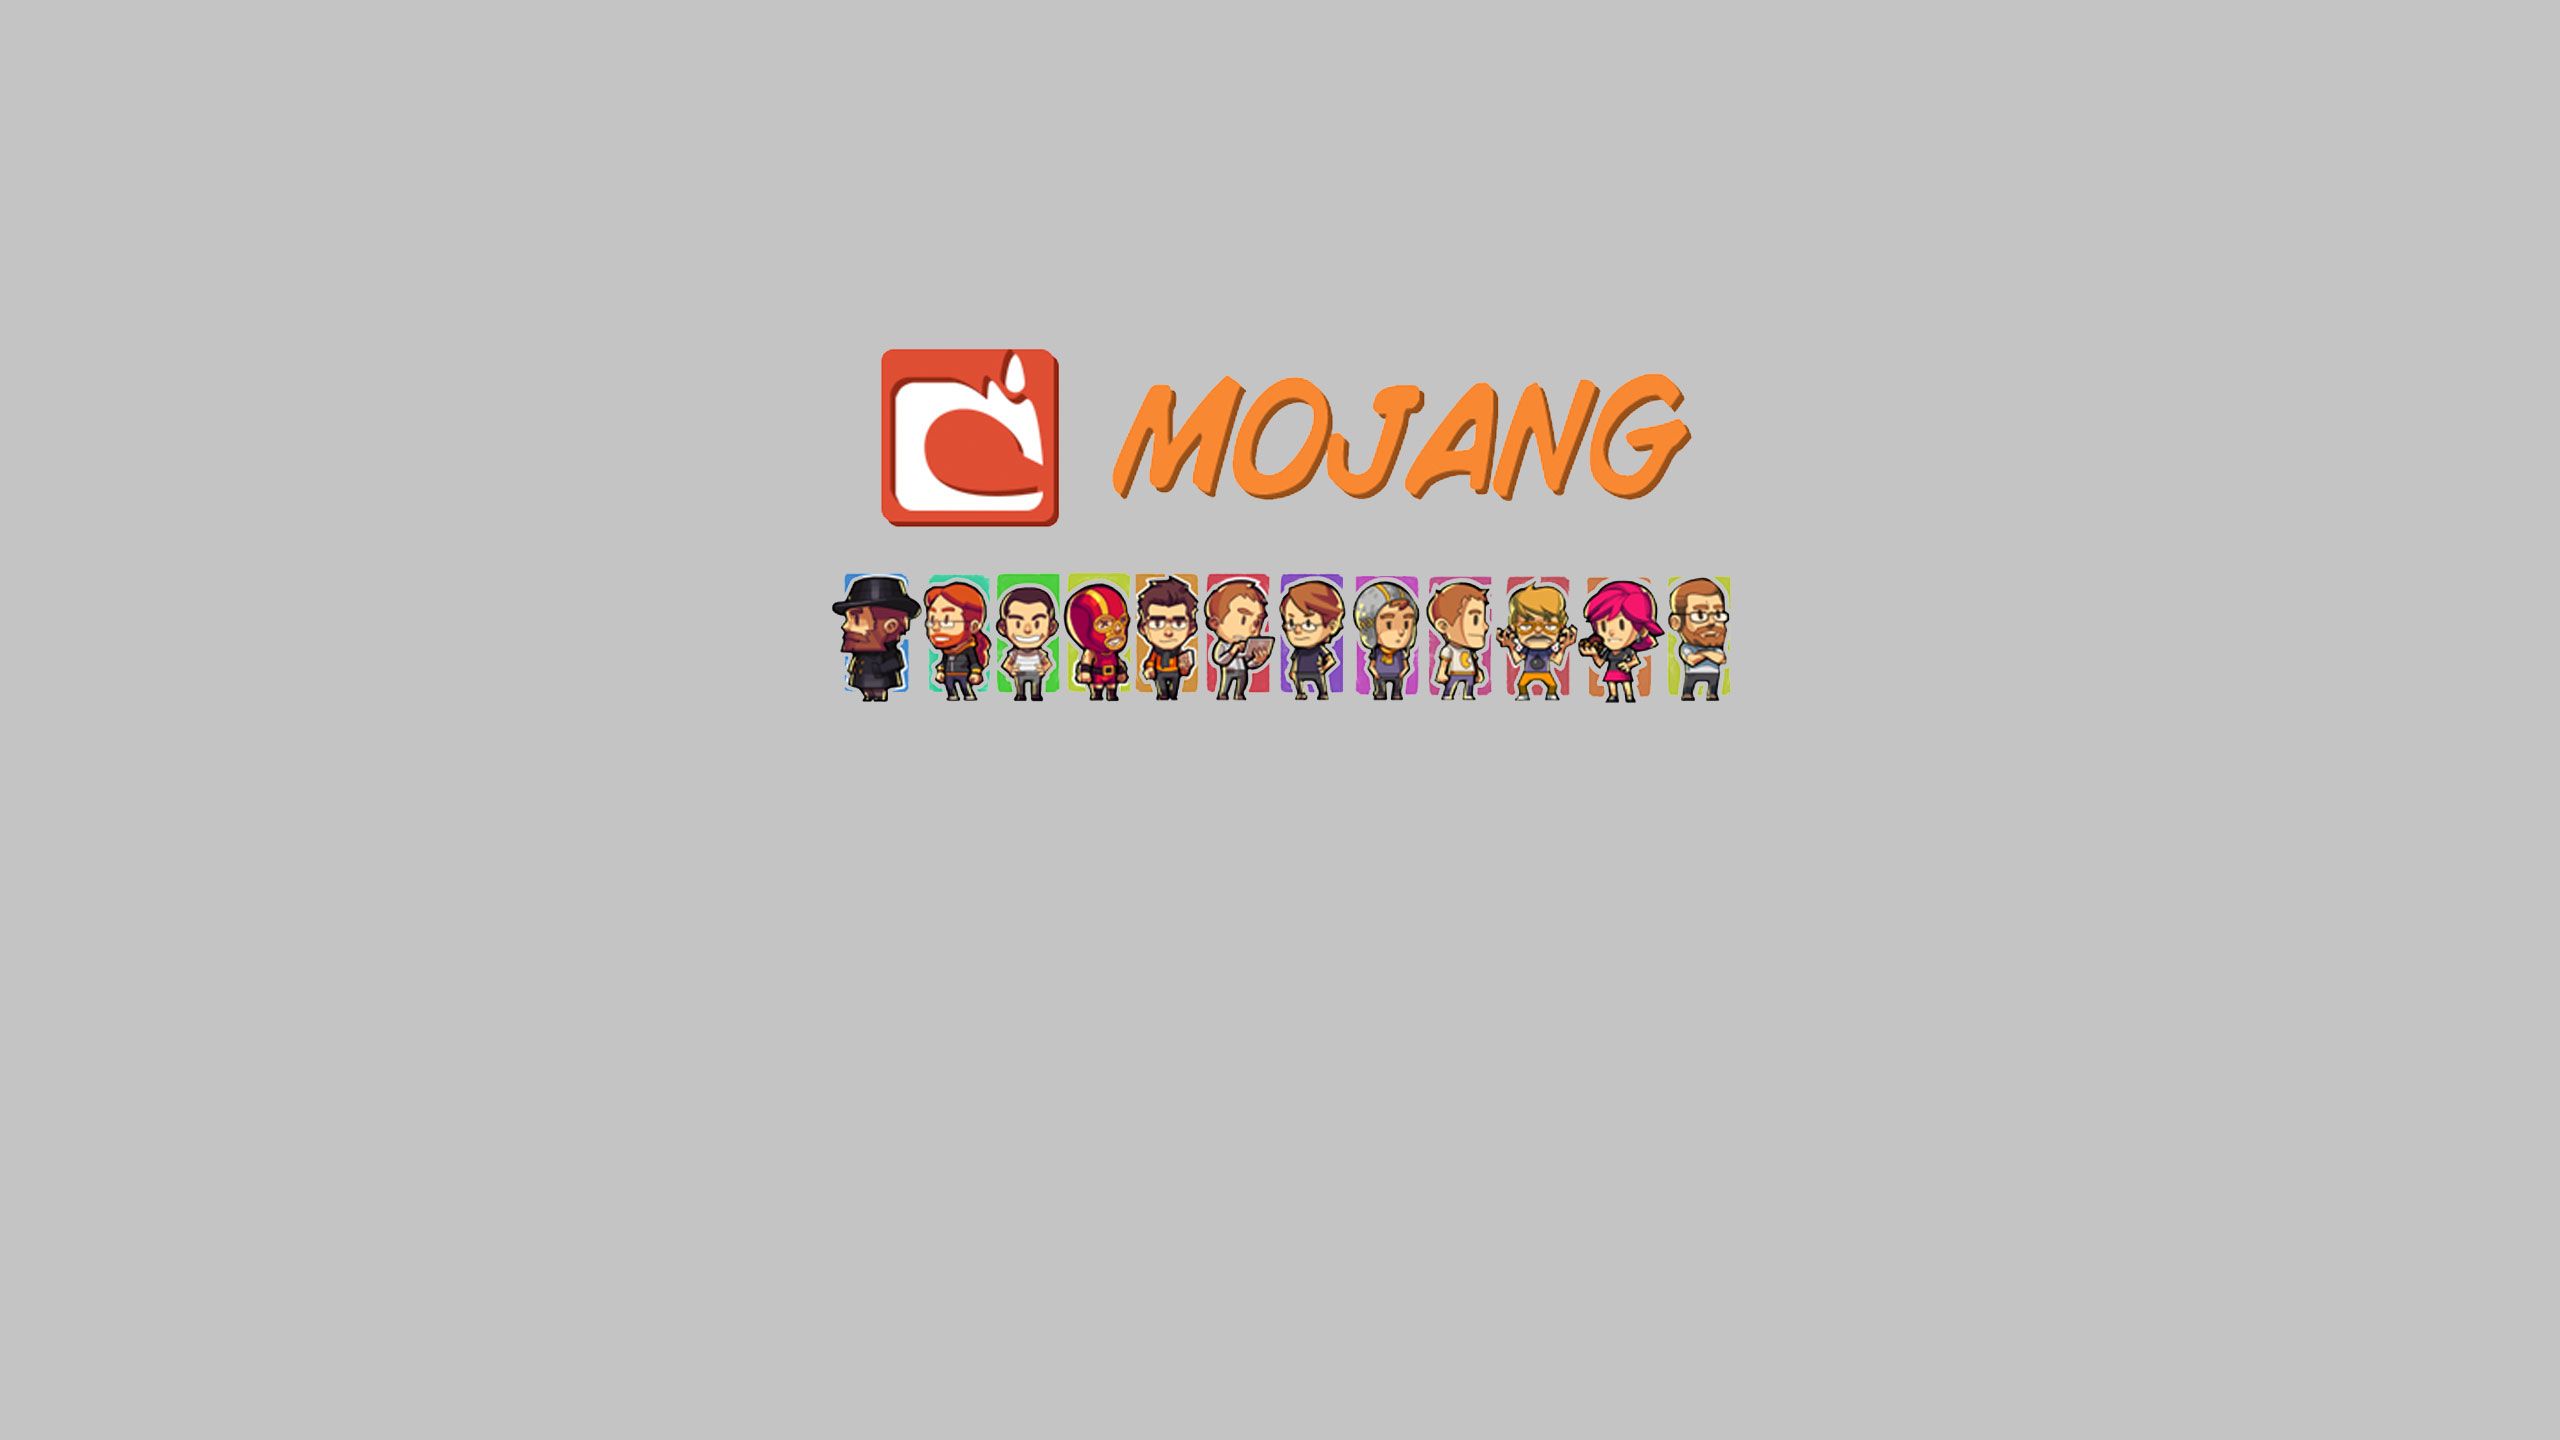 Mojang Wallpaper. Mojang Wallpaper, Mojang Wallpaper 1366X768 and Mojang Wallpaper 1080P